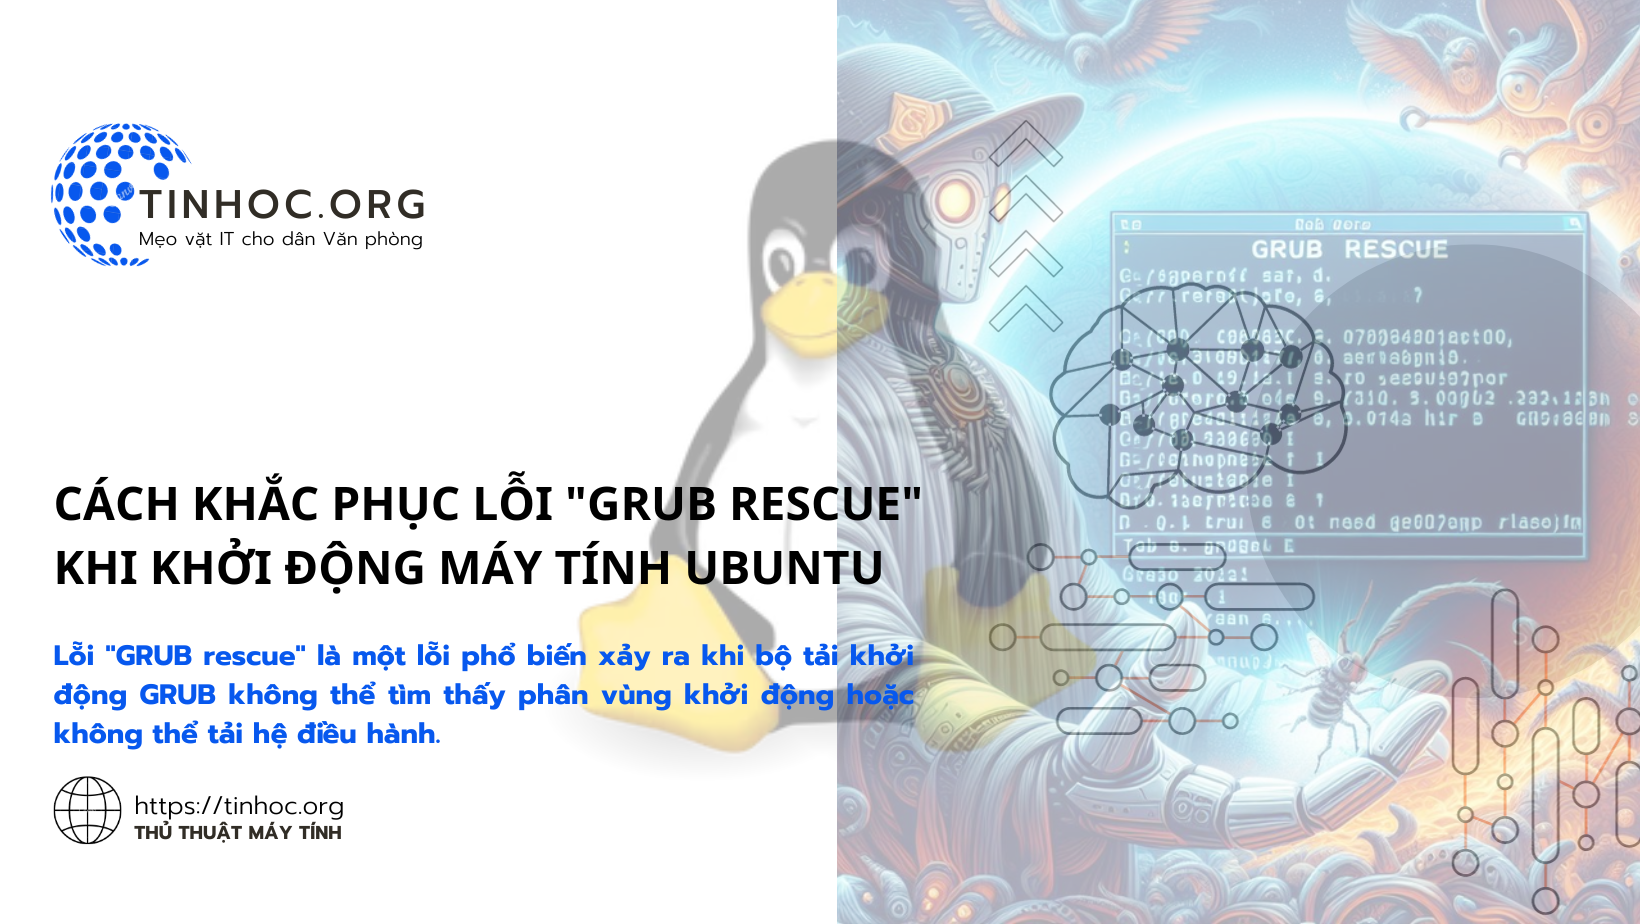 Cách khắc phục lỗi "GRUB rescue" khi khởi động máy tính Ubuntu